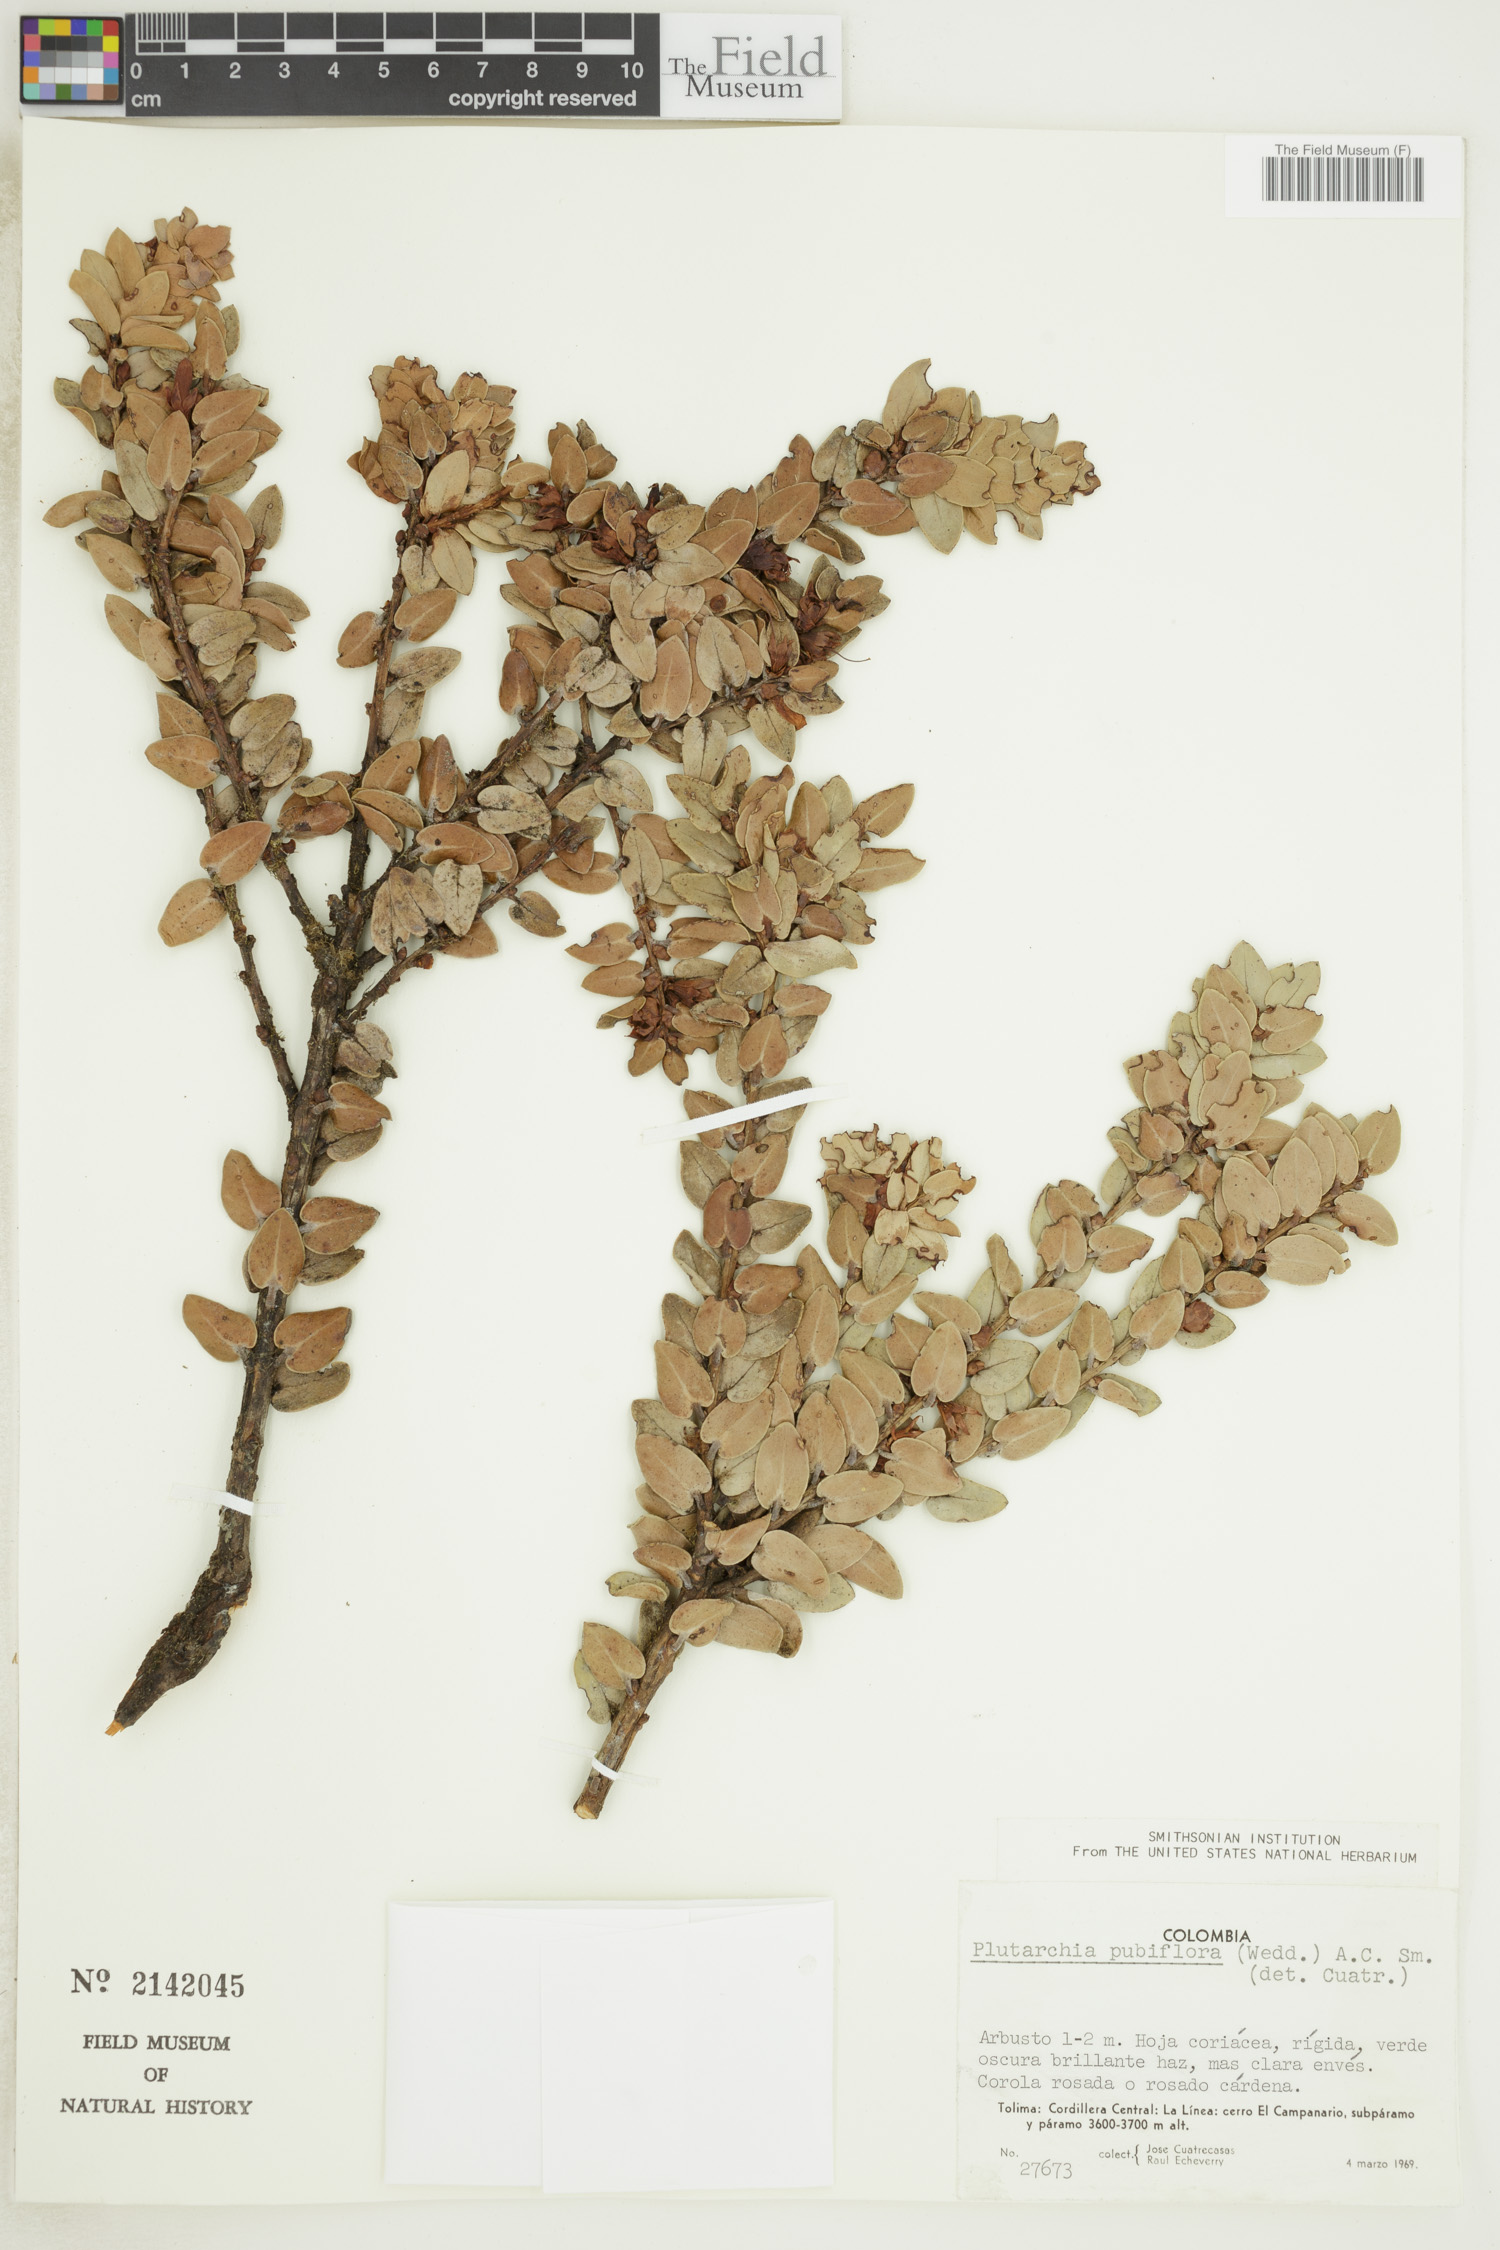 Plutarchia pubiflora image